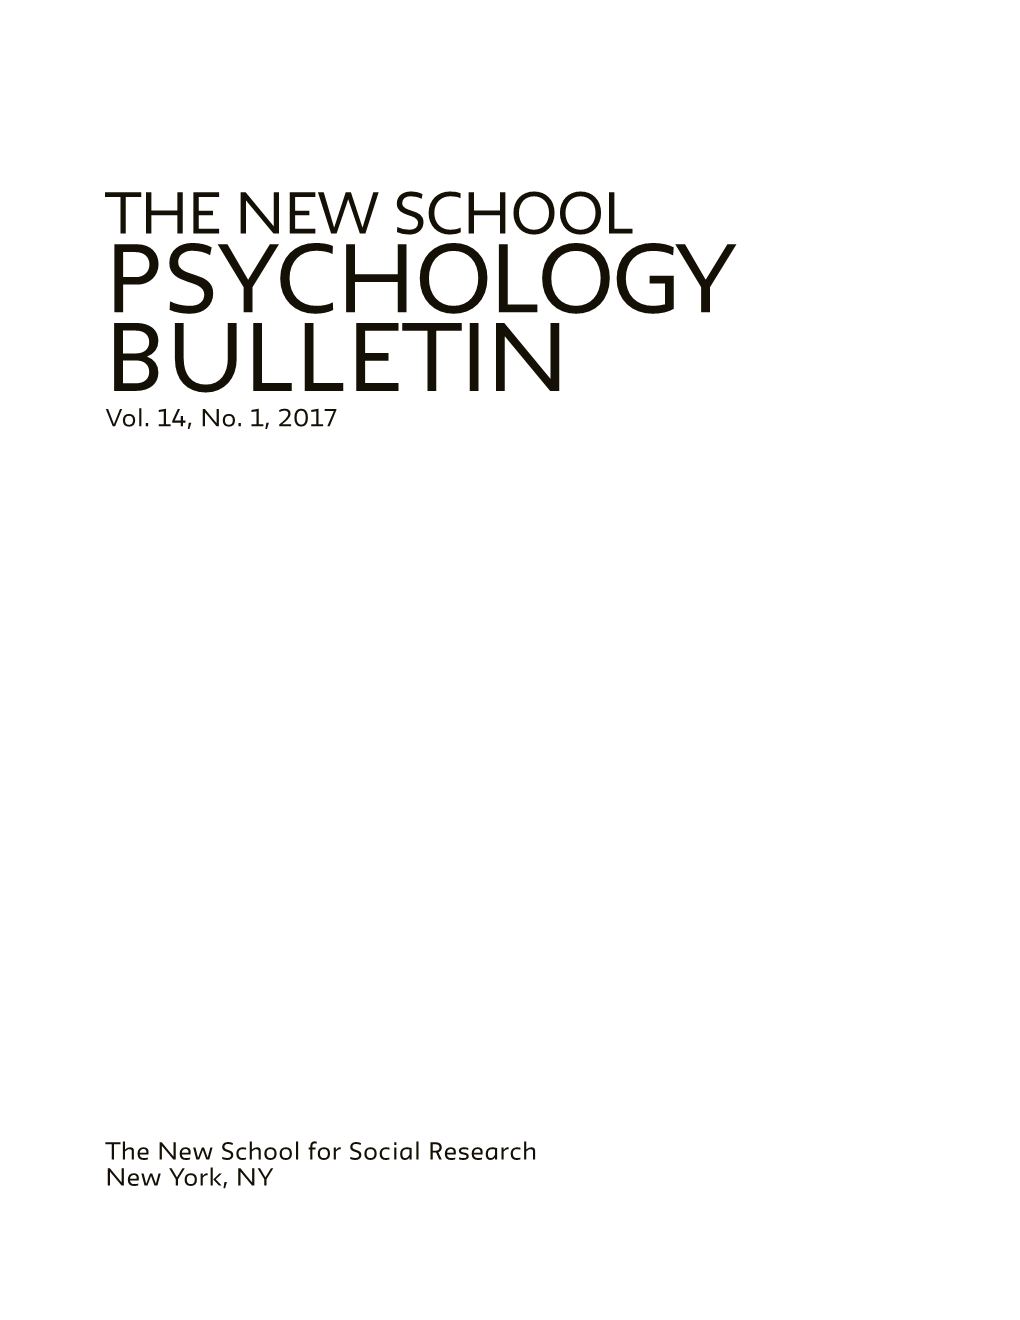 THE NEW SCHOOL PSYCHOLOGY BULLETIN Vol